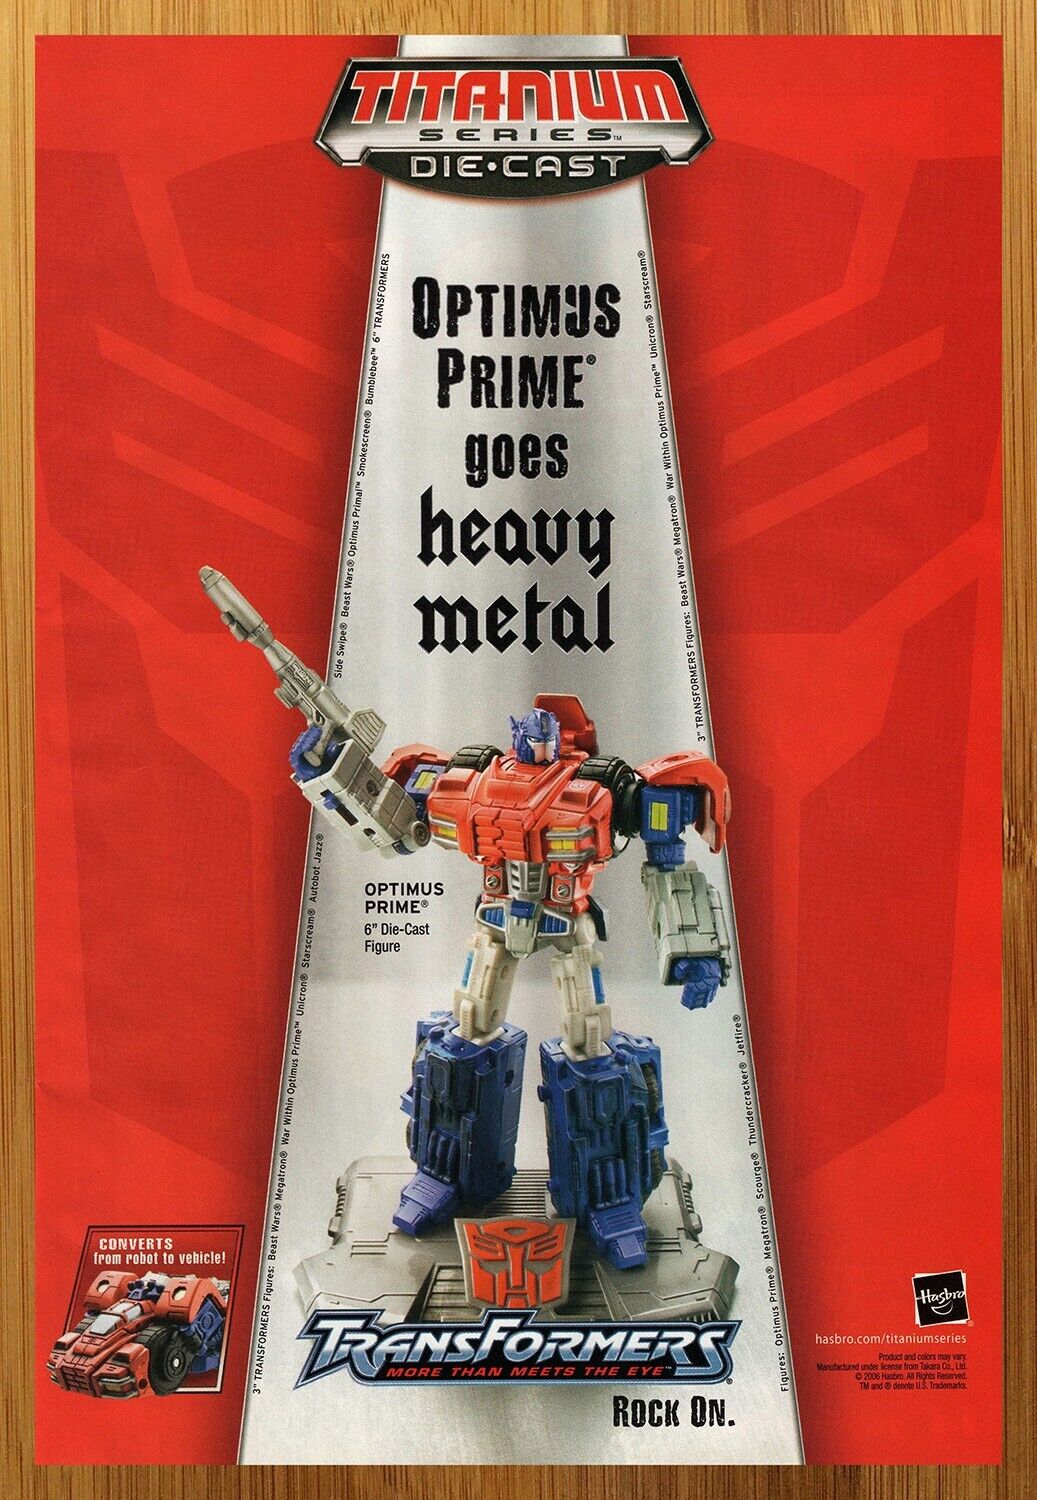 2006 Transformers Titanium Series Die-Cast Optimus Prime Figure Print Ad/Poster